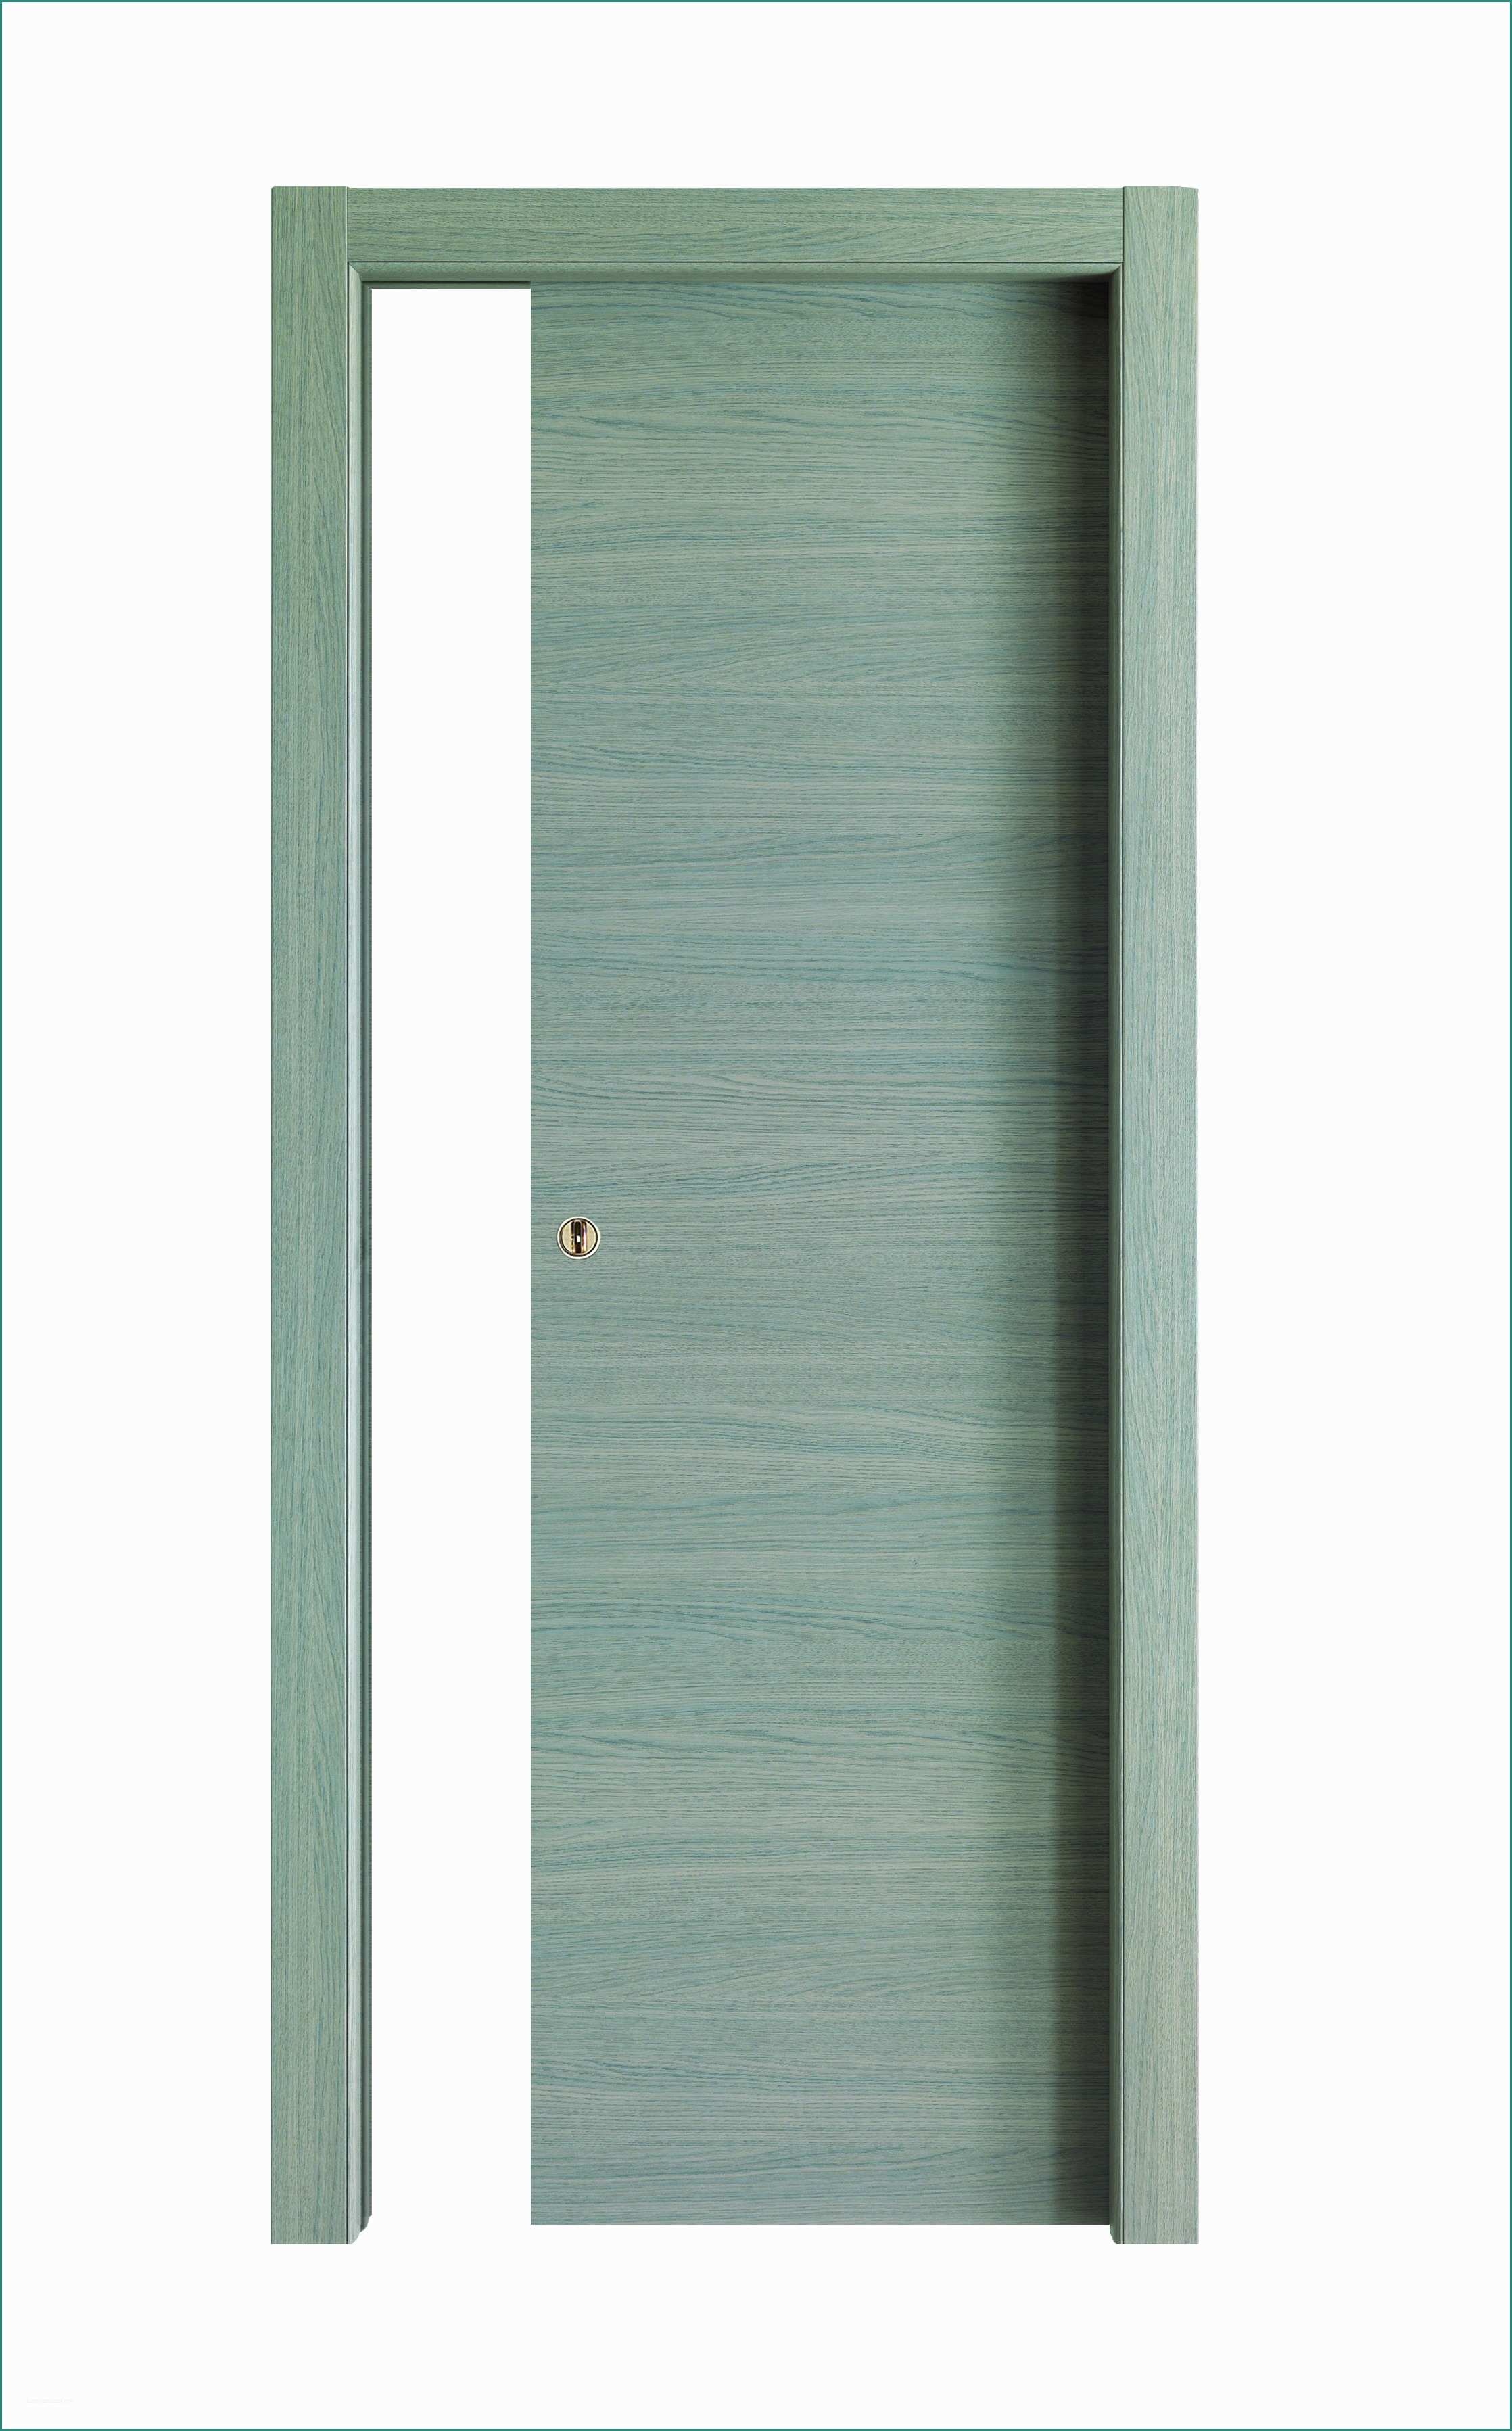 Porte Blindate Bricoman E Porte Di Design Per Interni Cheap Maniglie Porte Interne Ikea Per